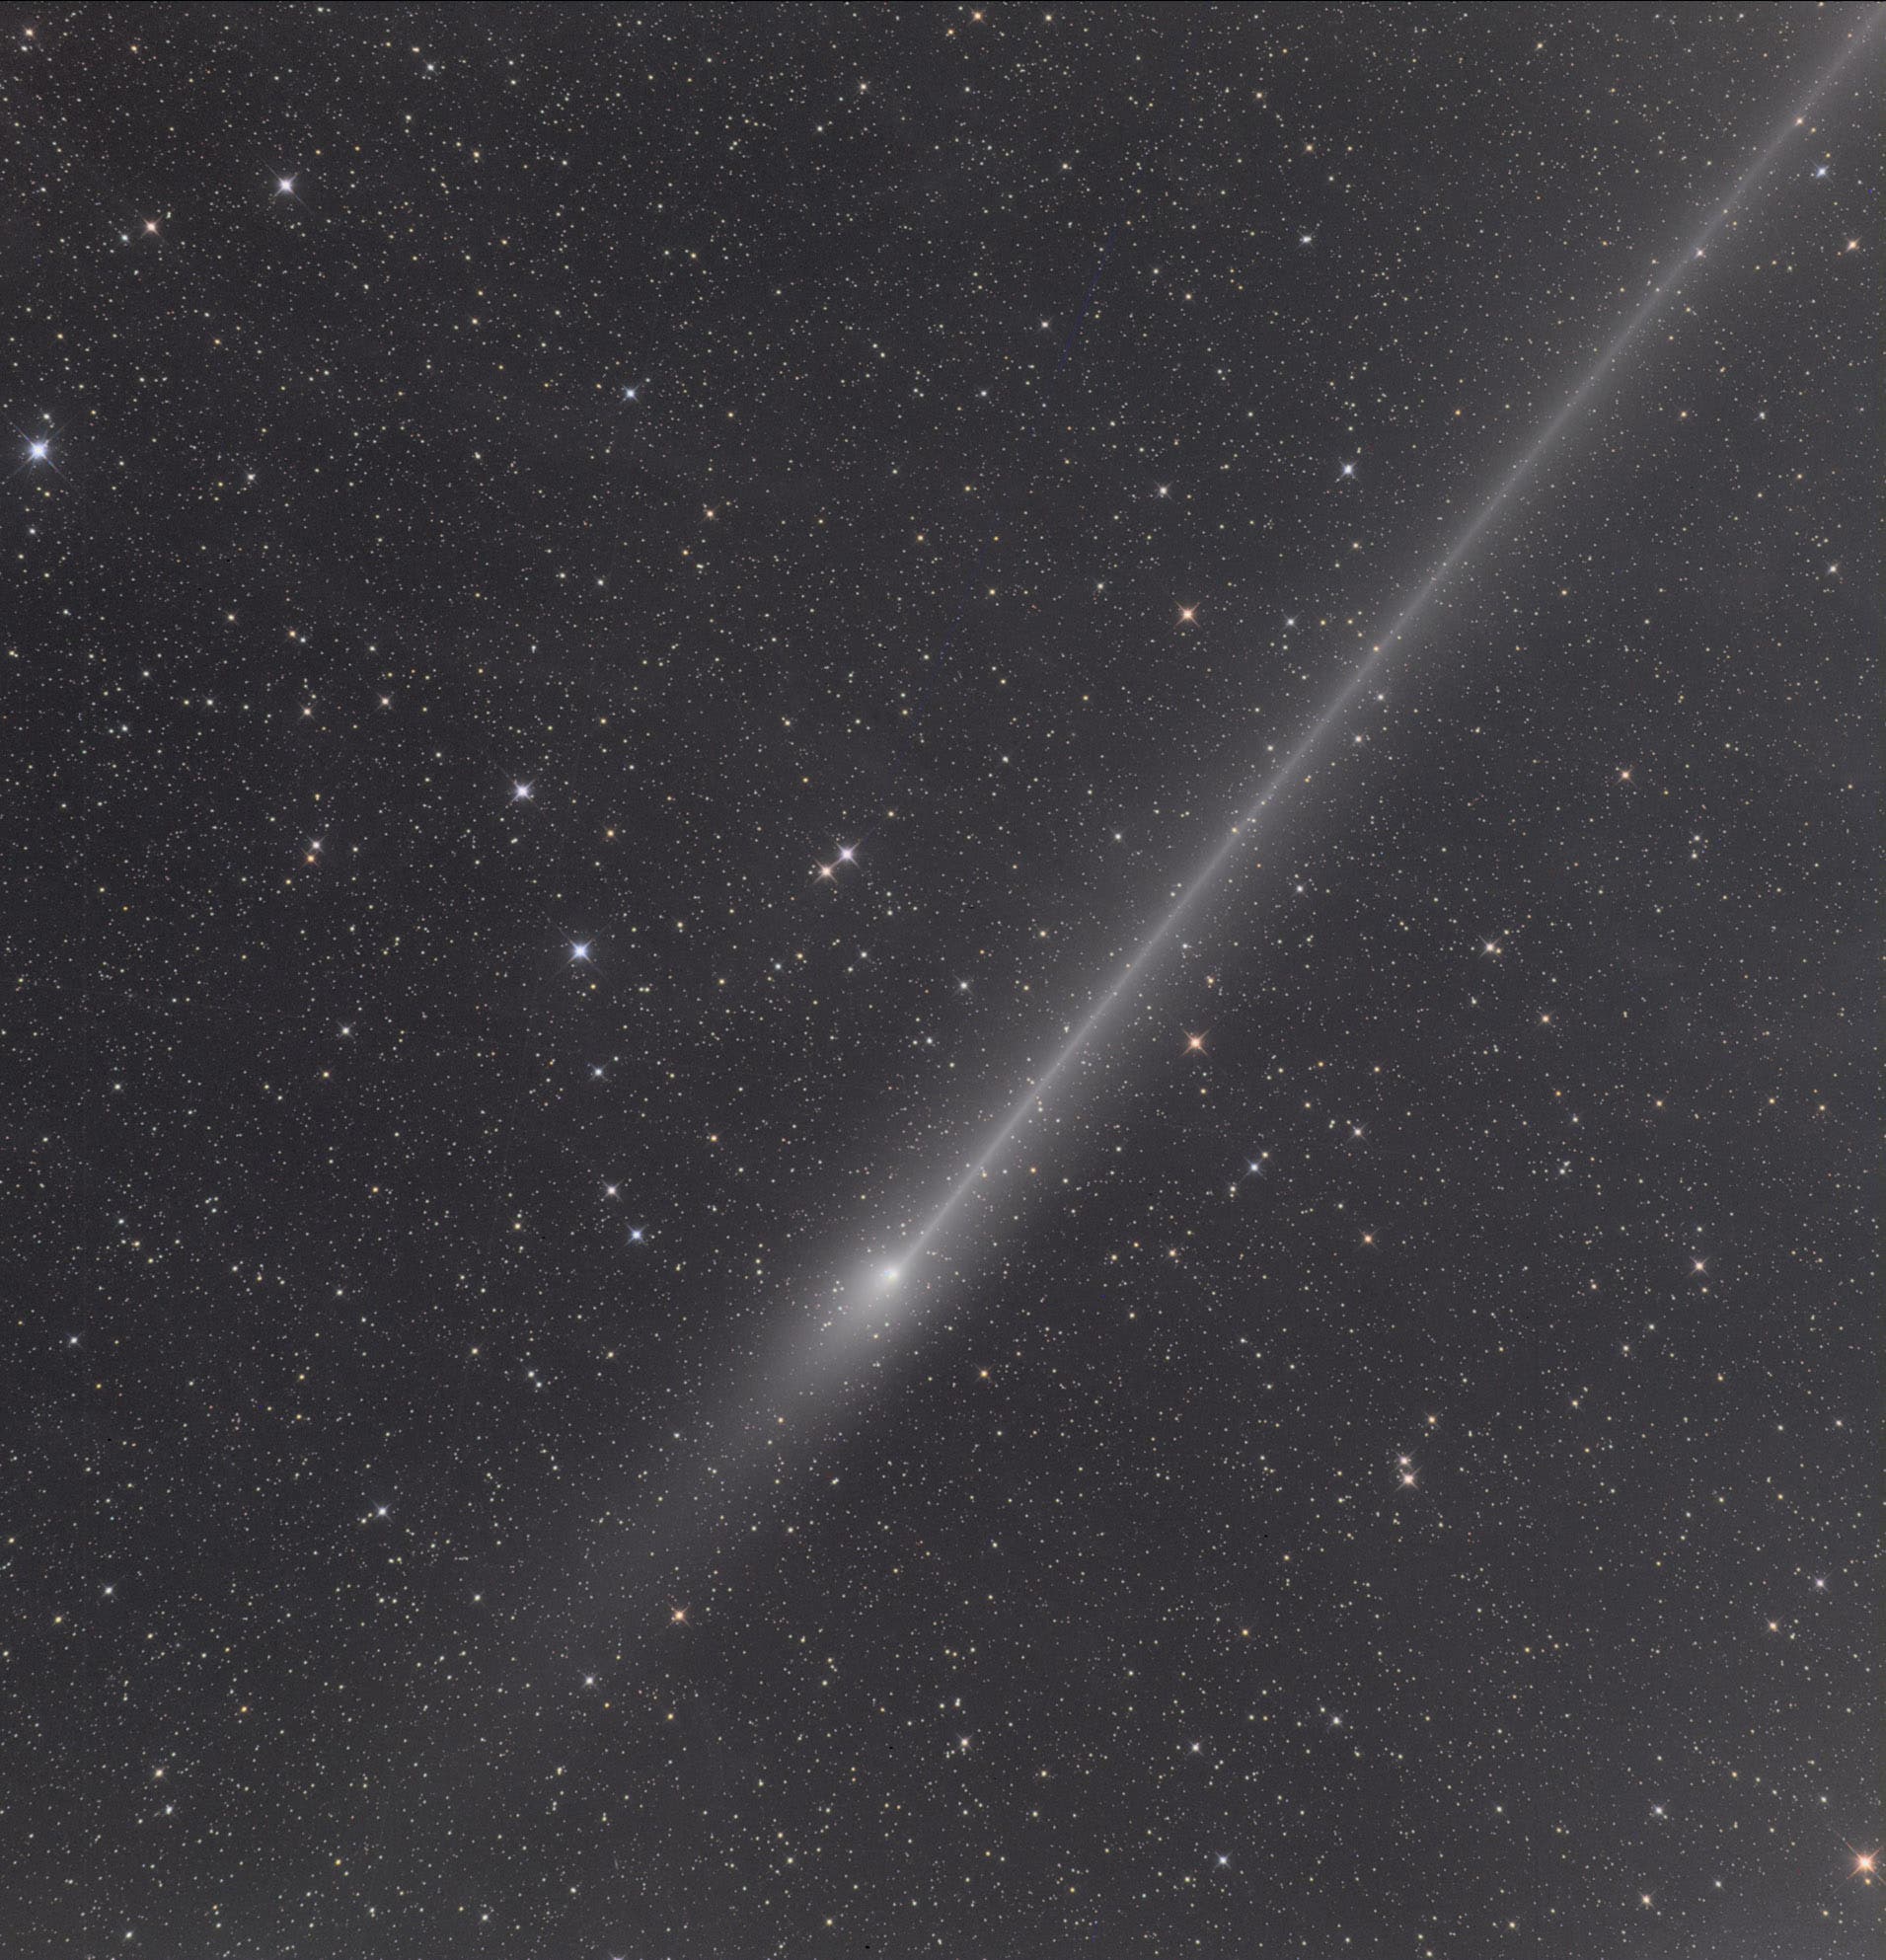 Komet C/2011 L4 (PANSTARRS) und galaktischer Zirrus